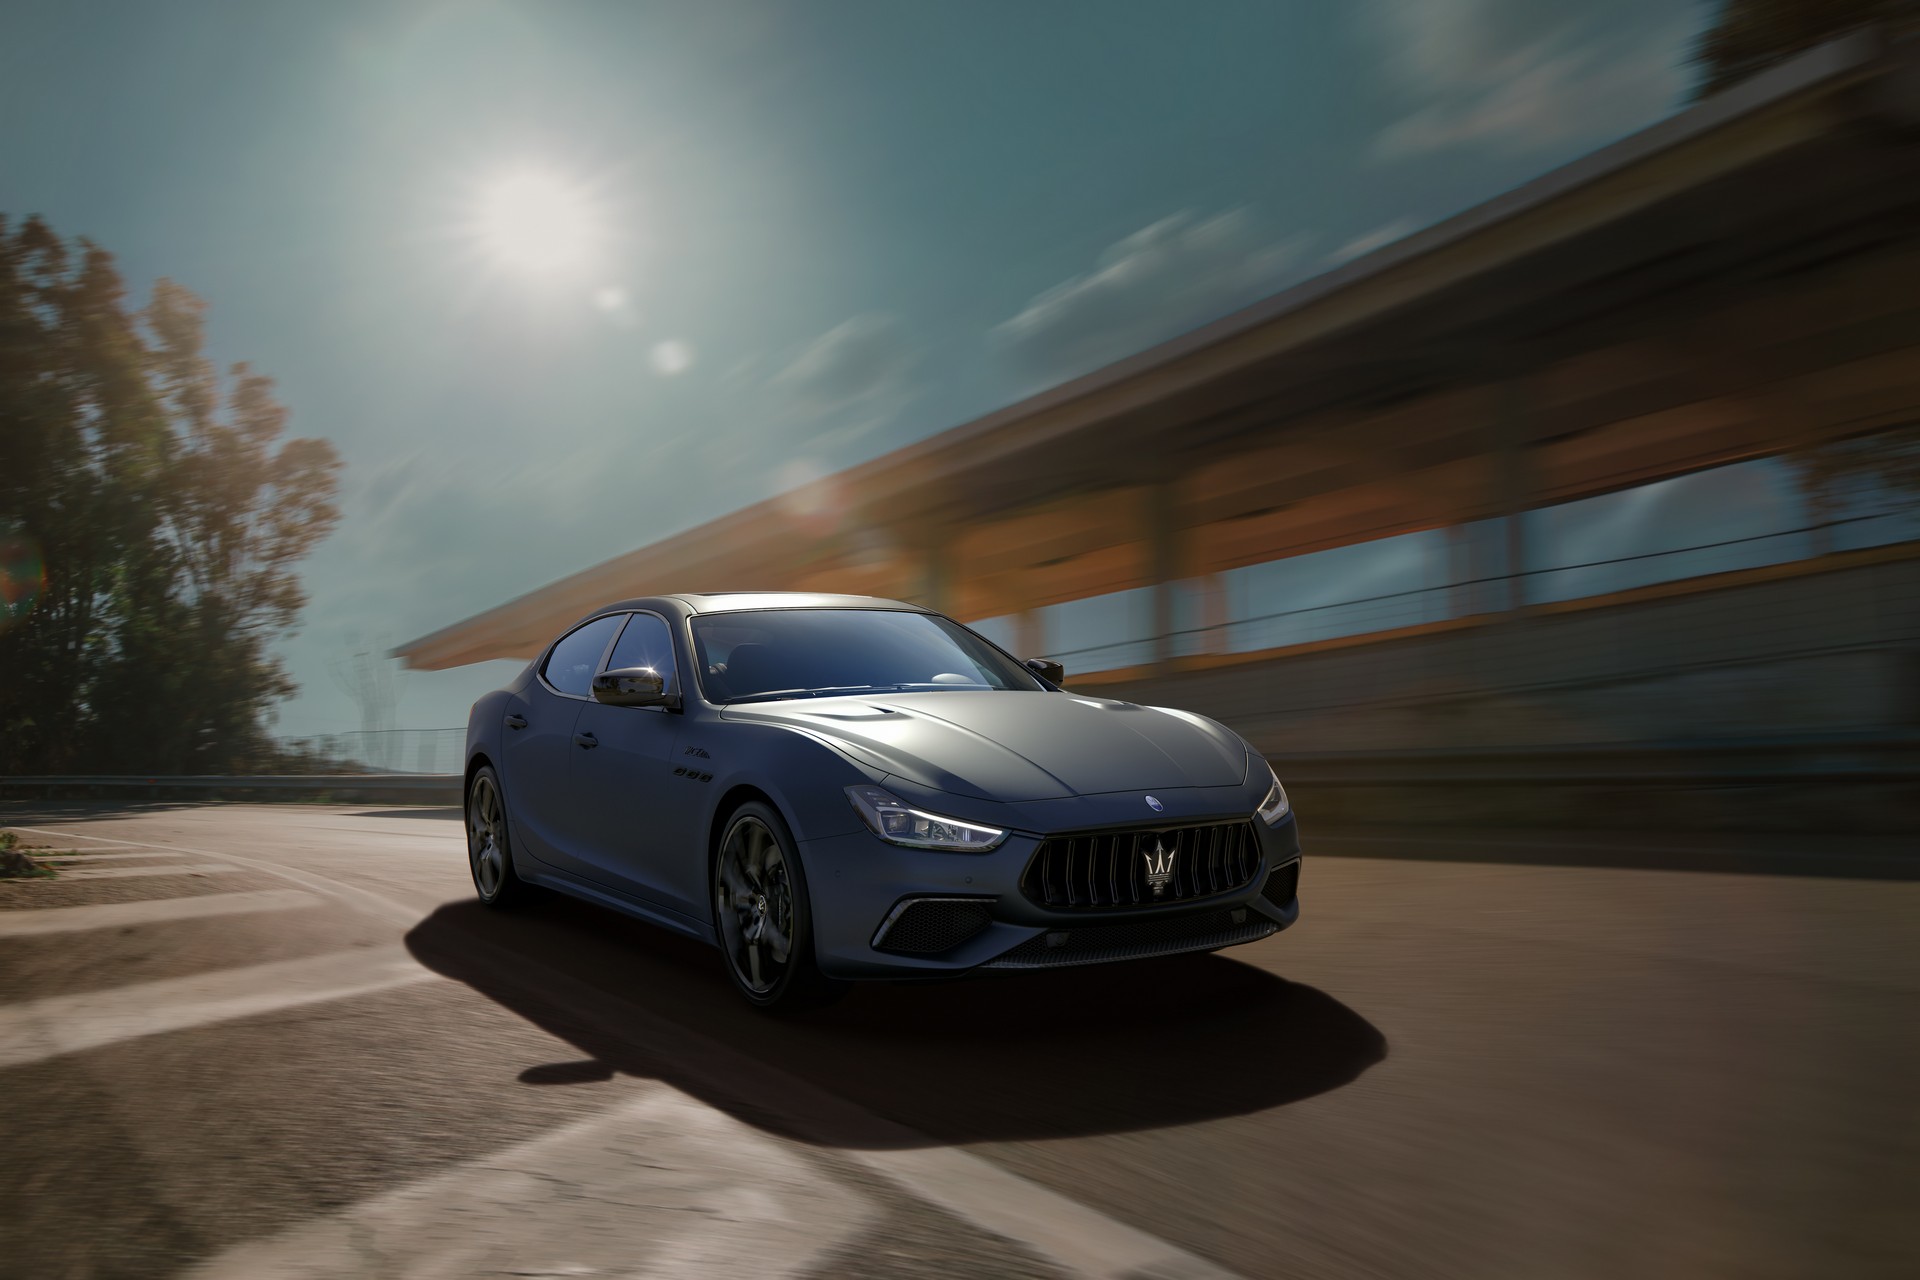 Tíz év garanciát ad a Maserati új autóinak motorjára és váltójára